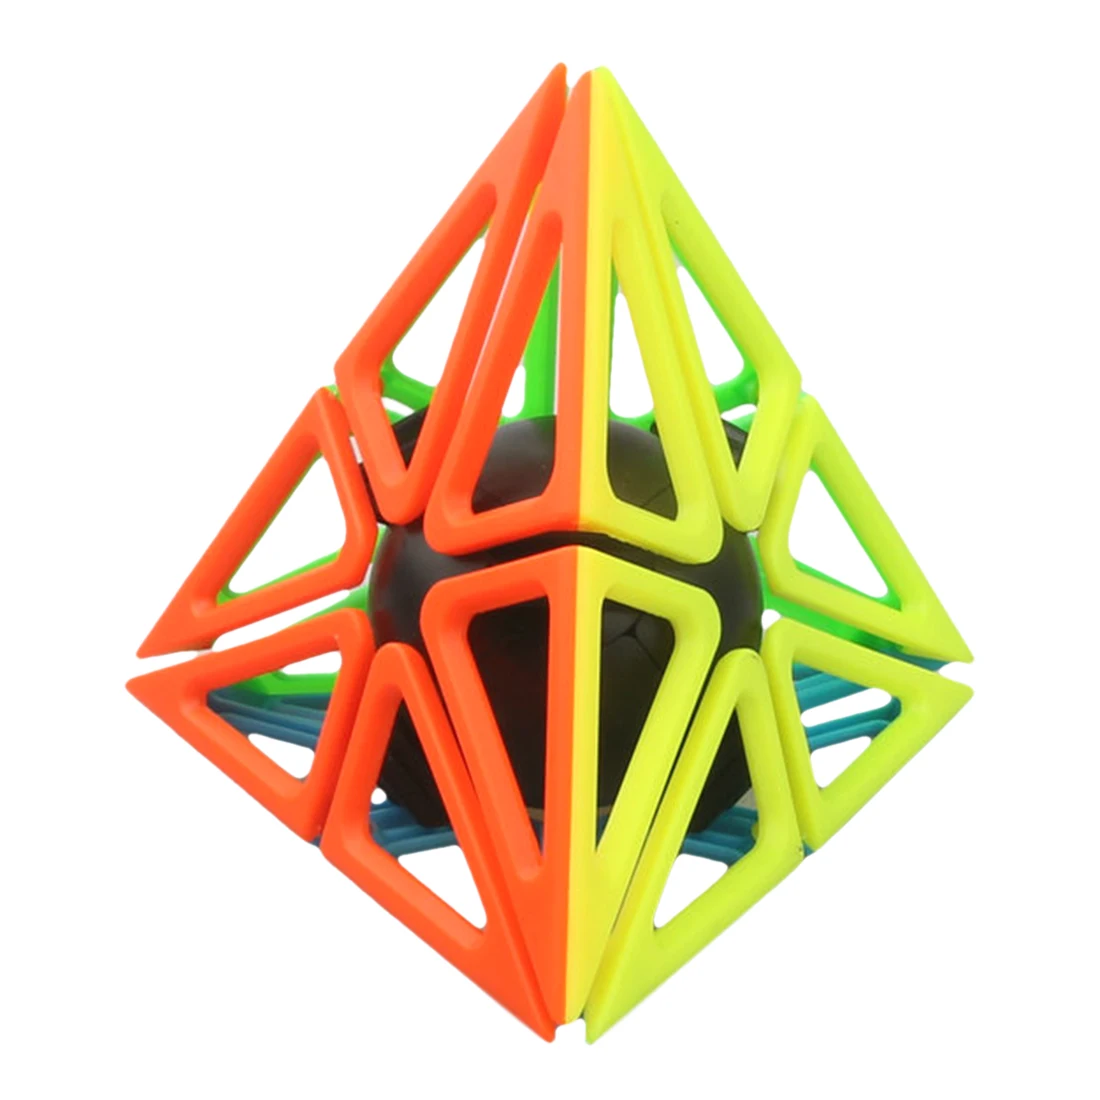 2019 Новое поступление Fangshi Lim Framework Pyramid волшебный куб головоломка игрушка для обучения мозгу